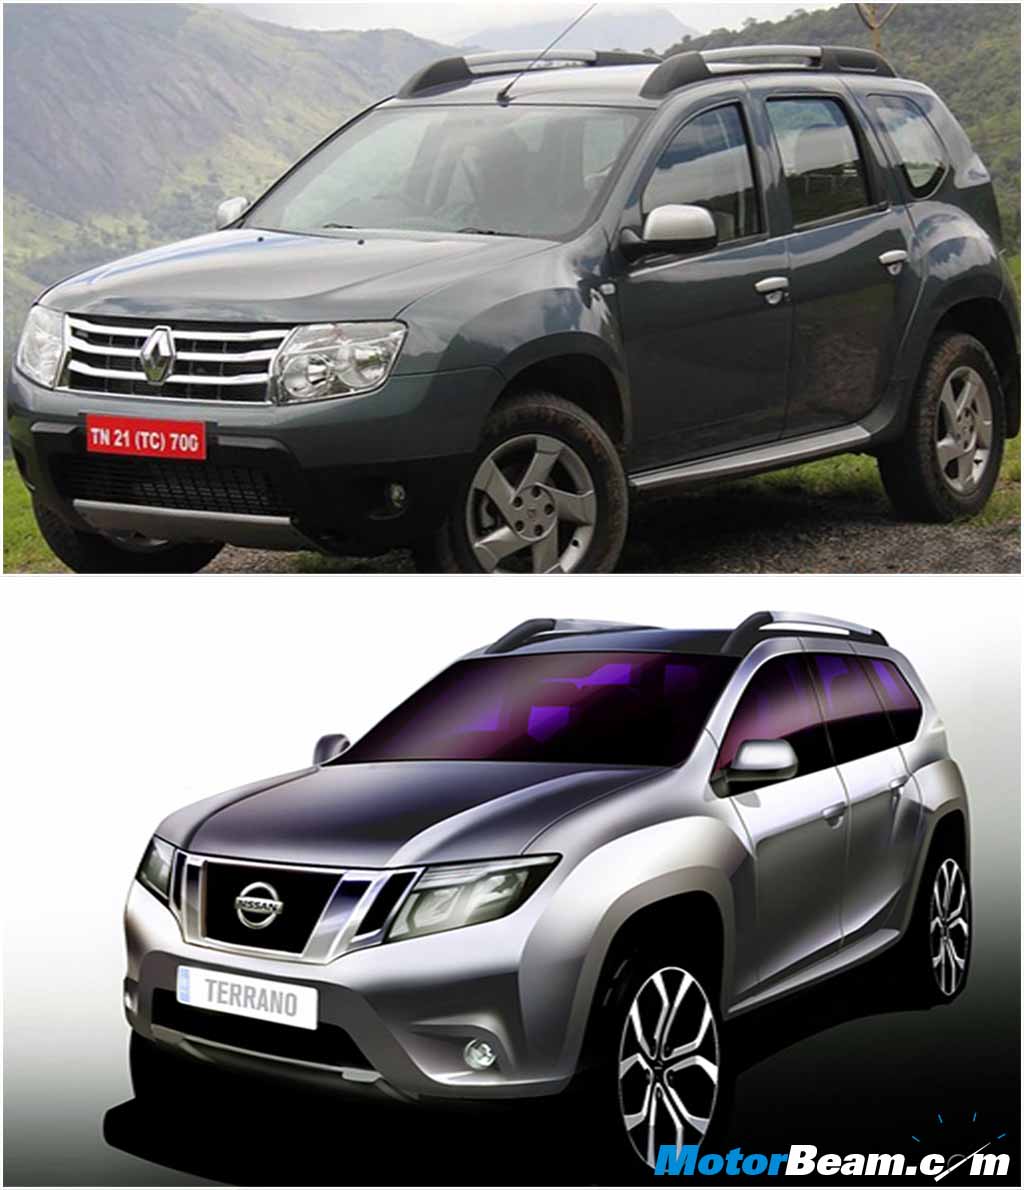 Nissan Terrano Comparison